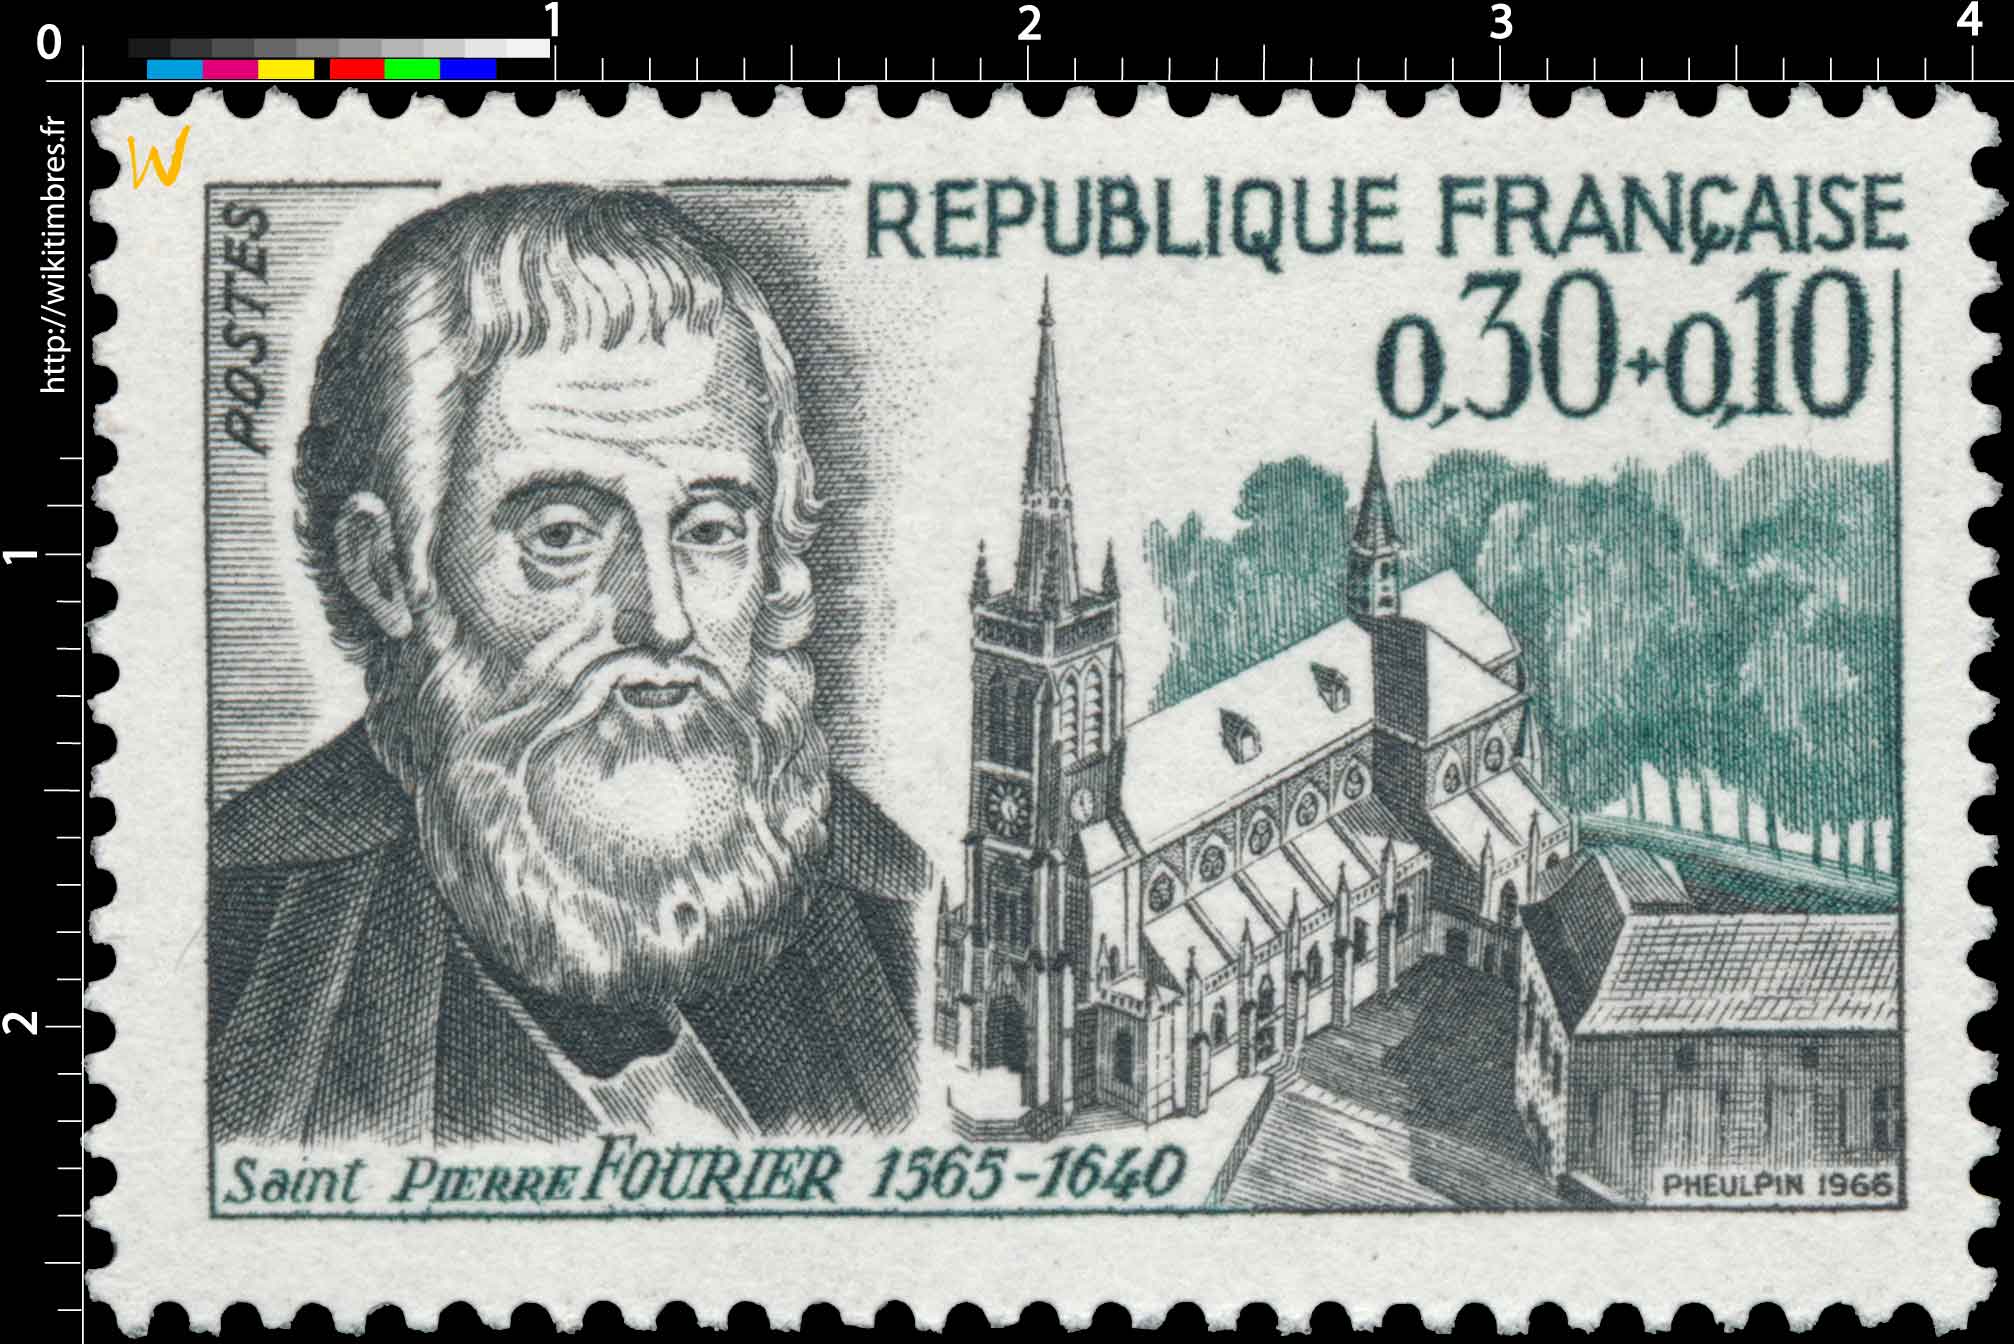 1966 Saint PIERRE FOURIER 1565-1640